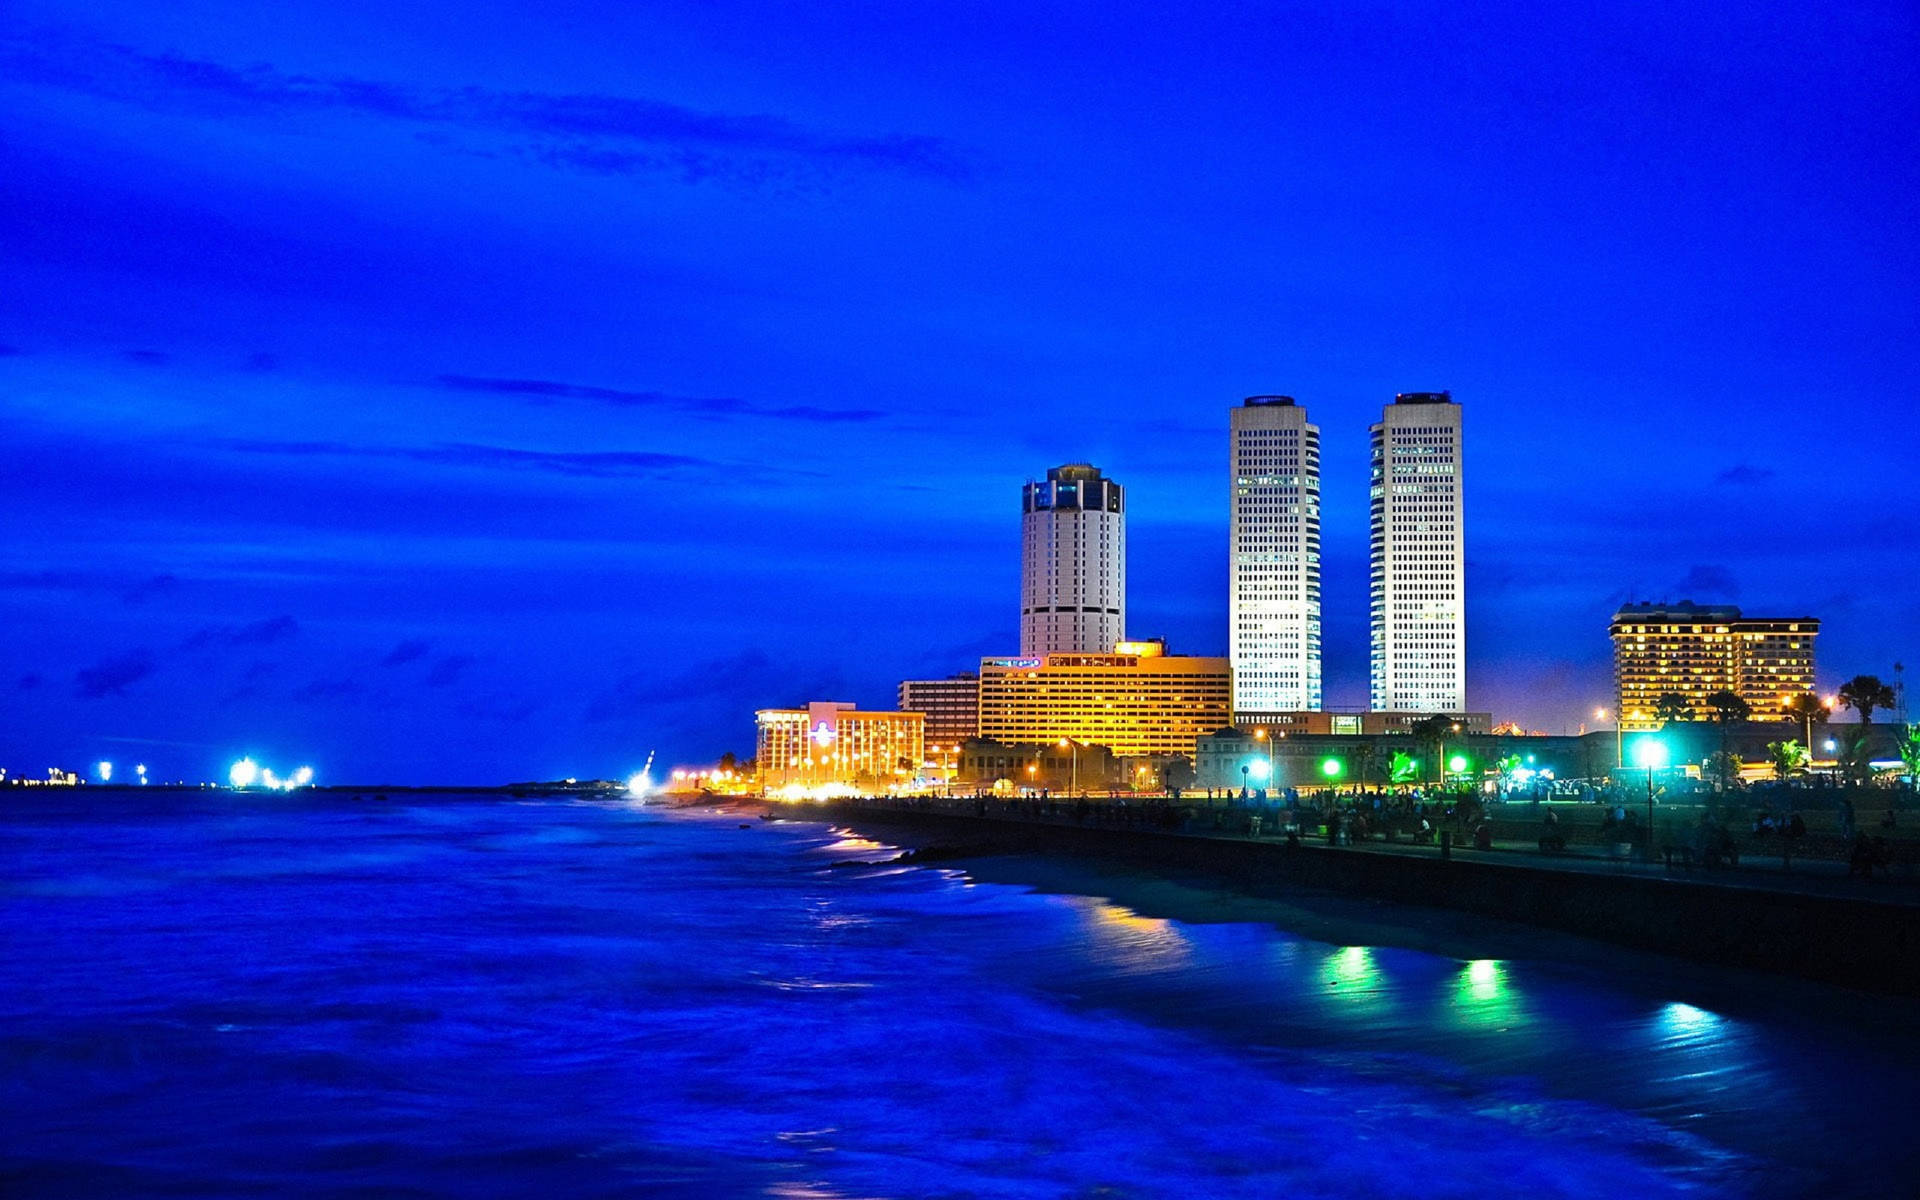 Sri Lanka Wtcc Night Skyline Picture